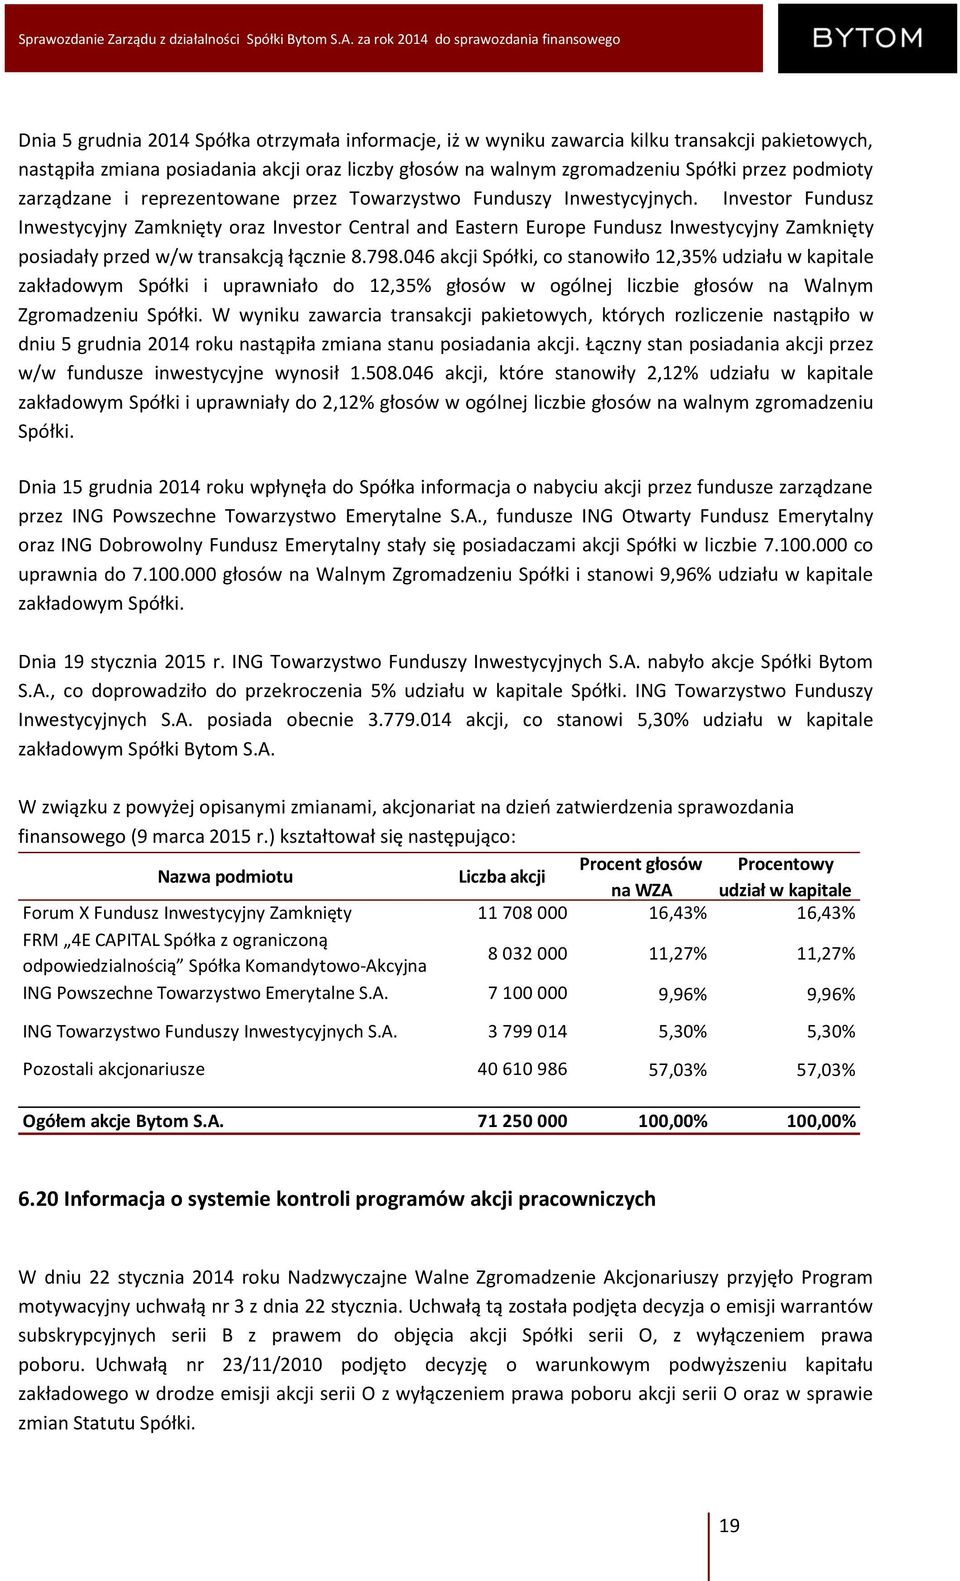 Investor Fundusz Inwestycyjny Zamknięty oraz Investor Central and Eastern Europe Fundusz Inwestycyjny Zamknięty posiadały przed w/w transakcją łącznie 8.798.